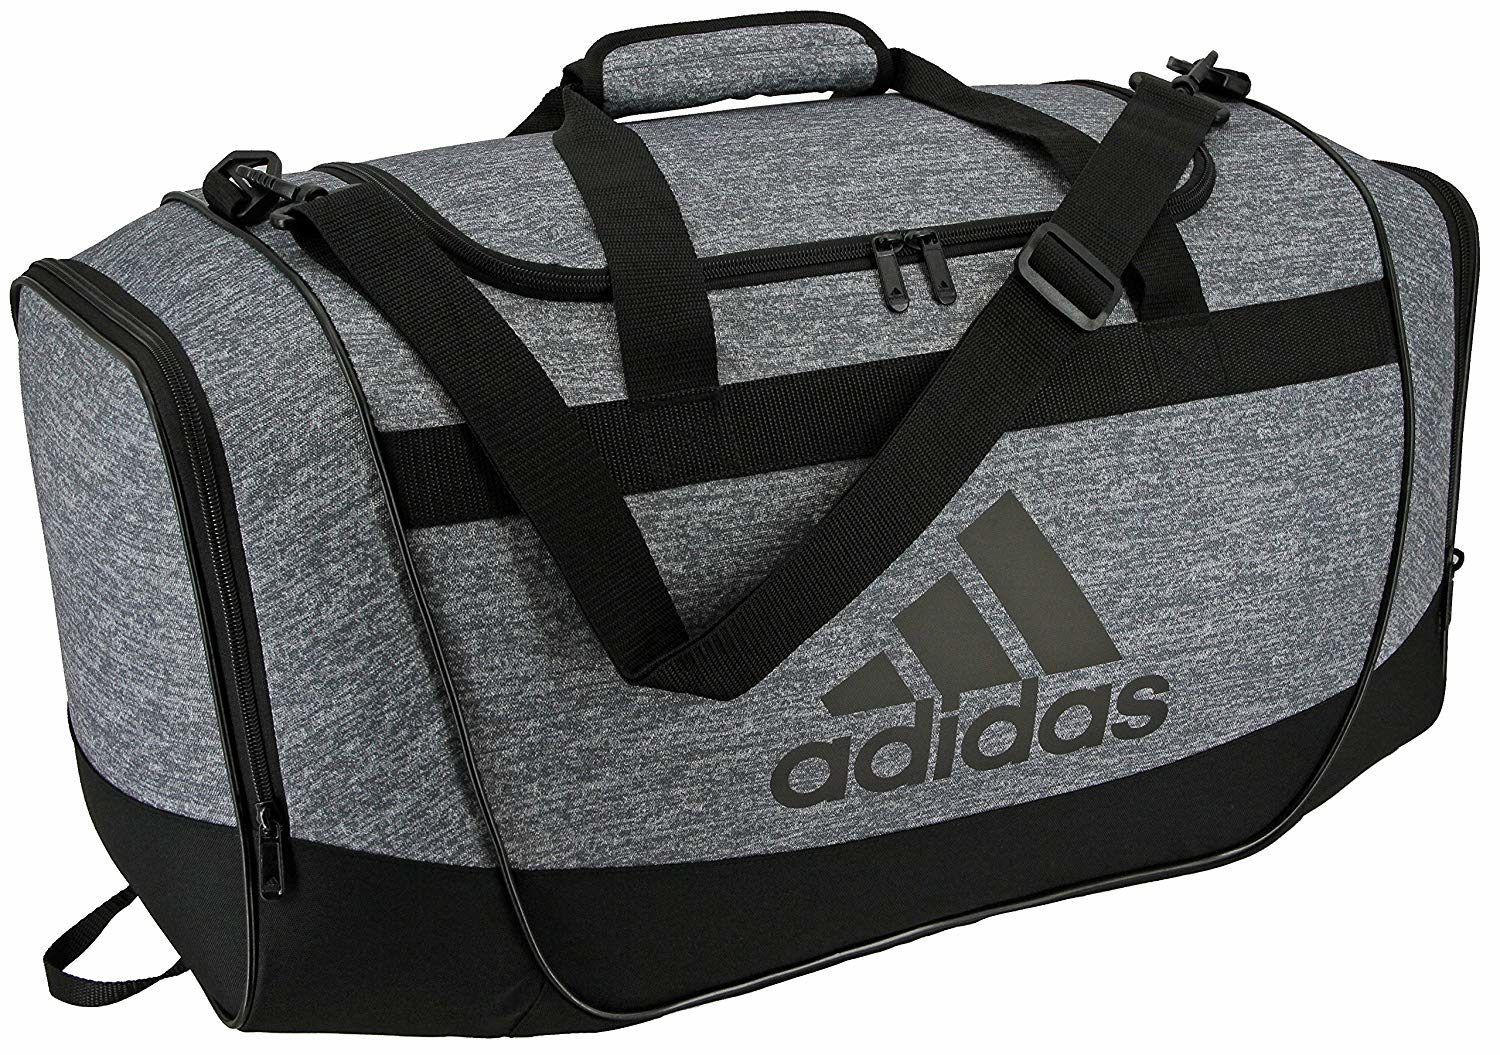 Gym Bag Amazon